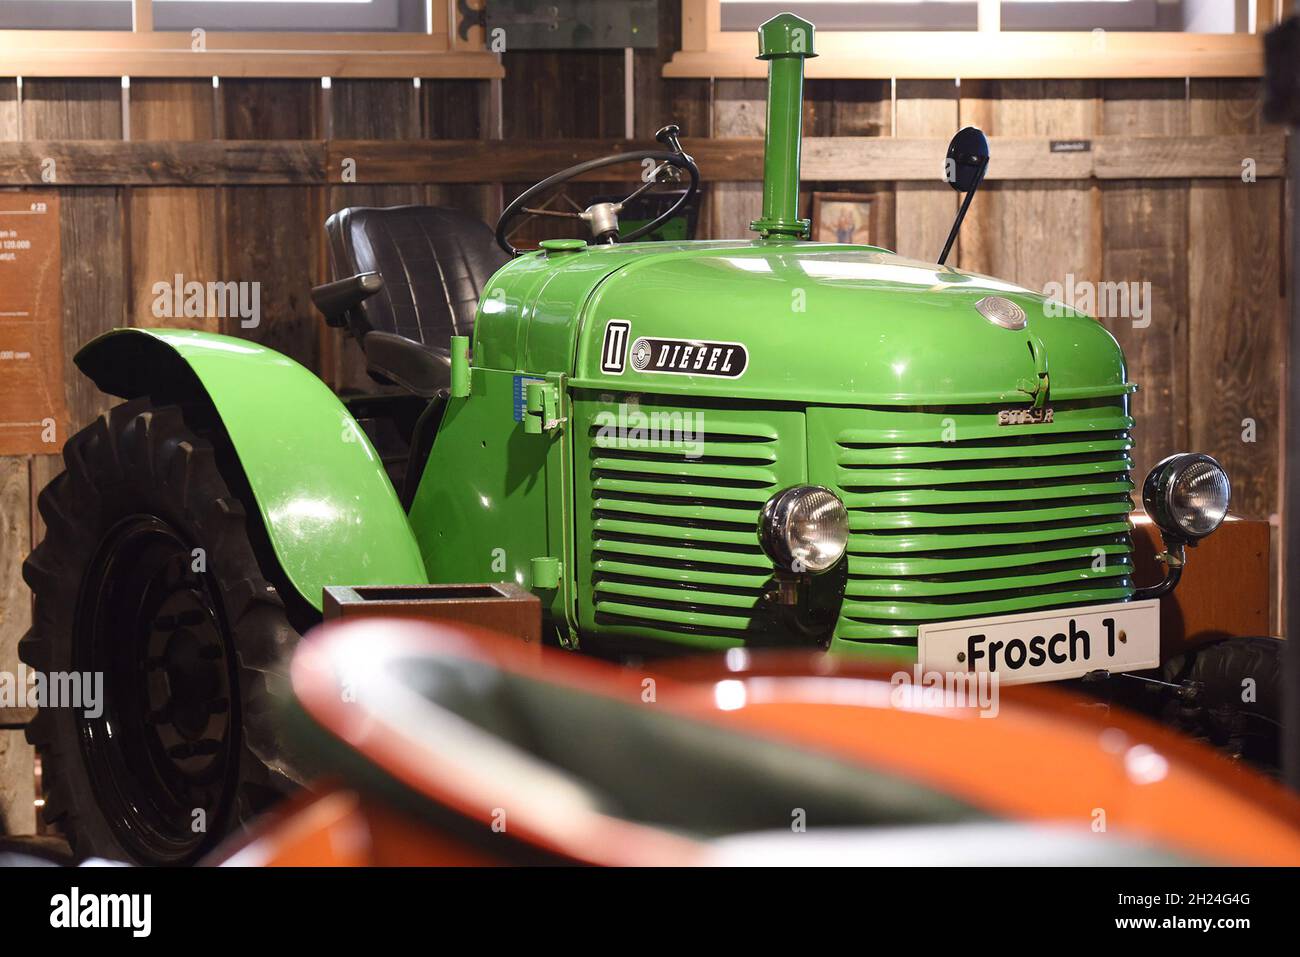 Ein historisches Steyr Traktor im Museum fahr(t)raum in Mattsee, Österreich, Europa - A historic Steyr tractor in the museum fahr(t)raum in Mattsee, A Stock Photo